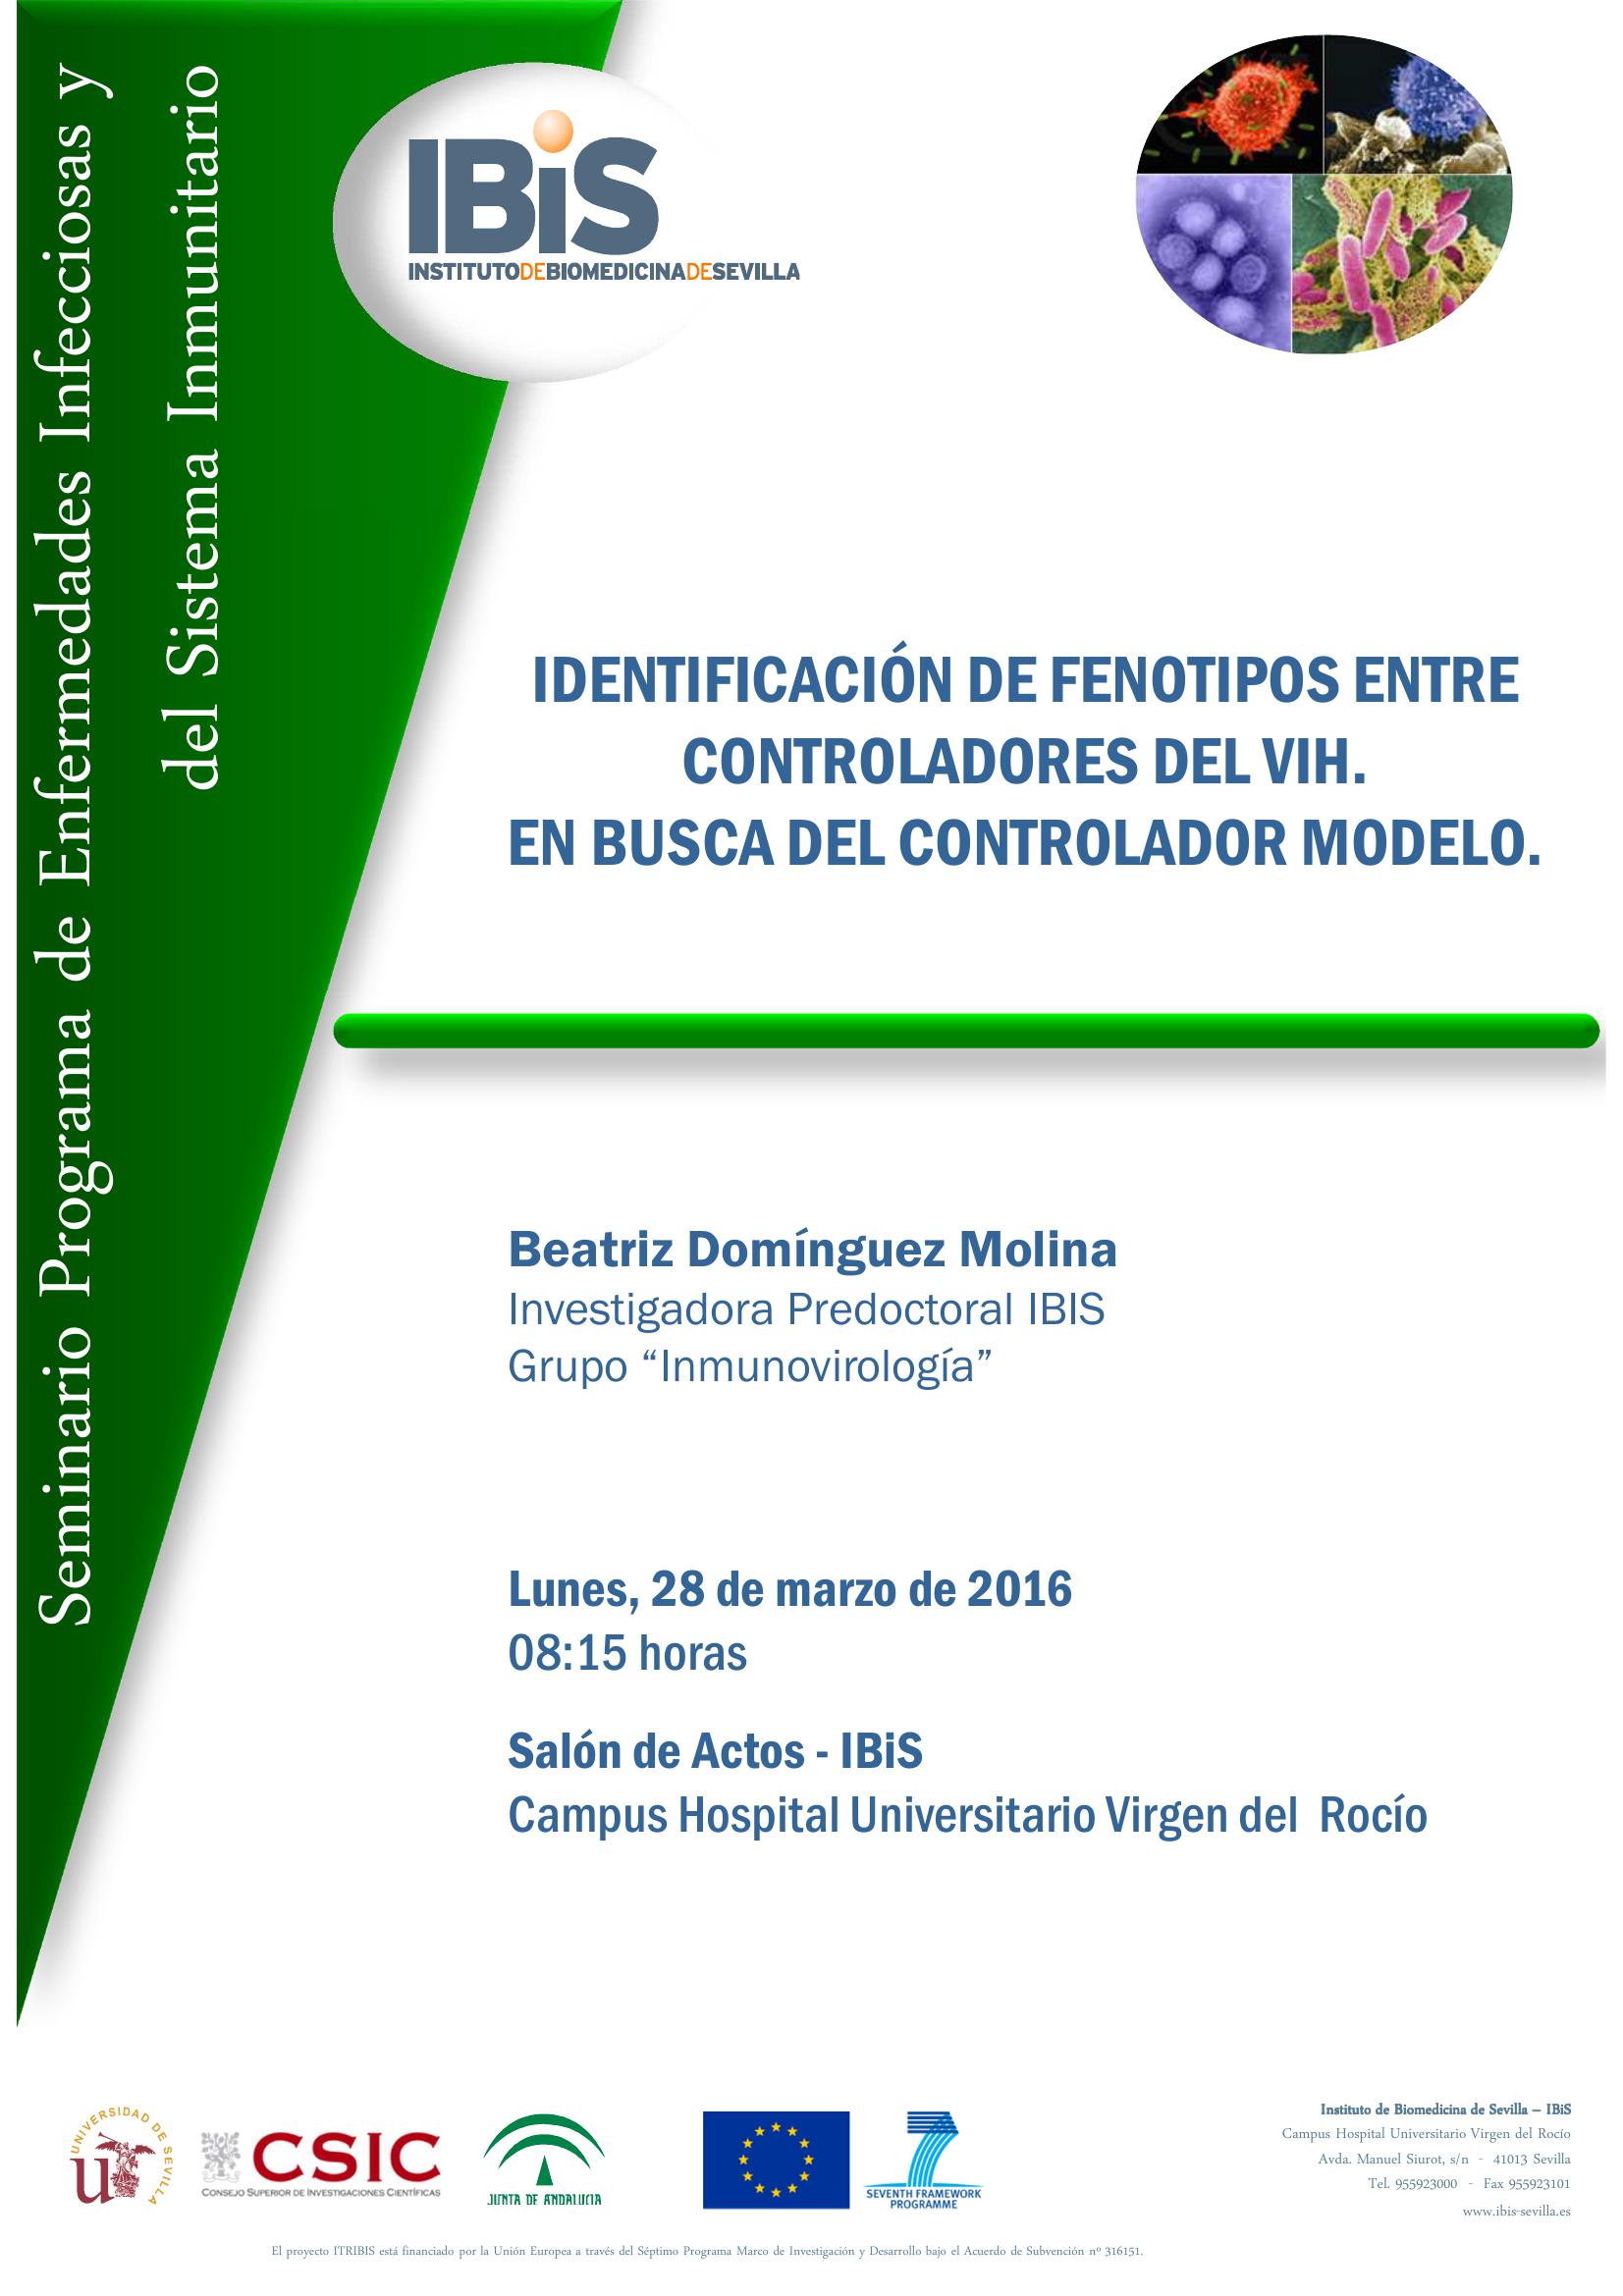 Poster: IDENTIFICACIÓN DE FENOTIPOS ENTRE CONTROLADORES DEL VIH.  BUSCANDO EL MODELO CORRECTO DE CURA FUNCIONAL